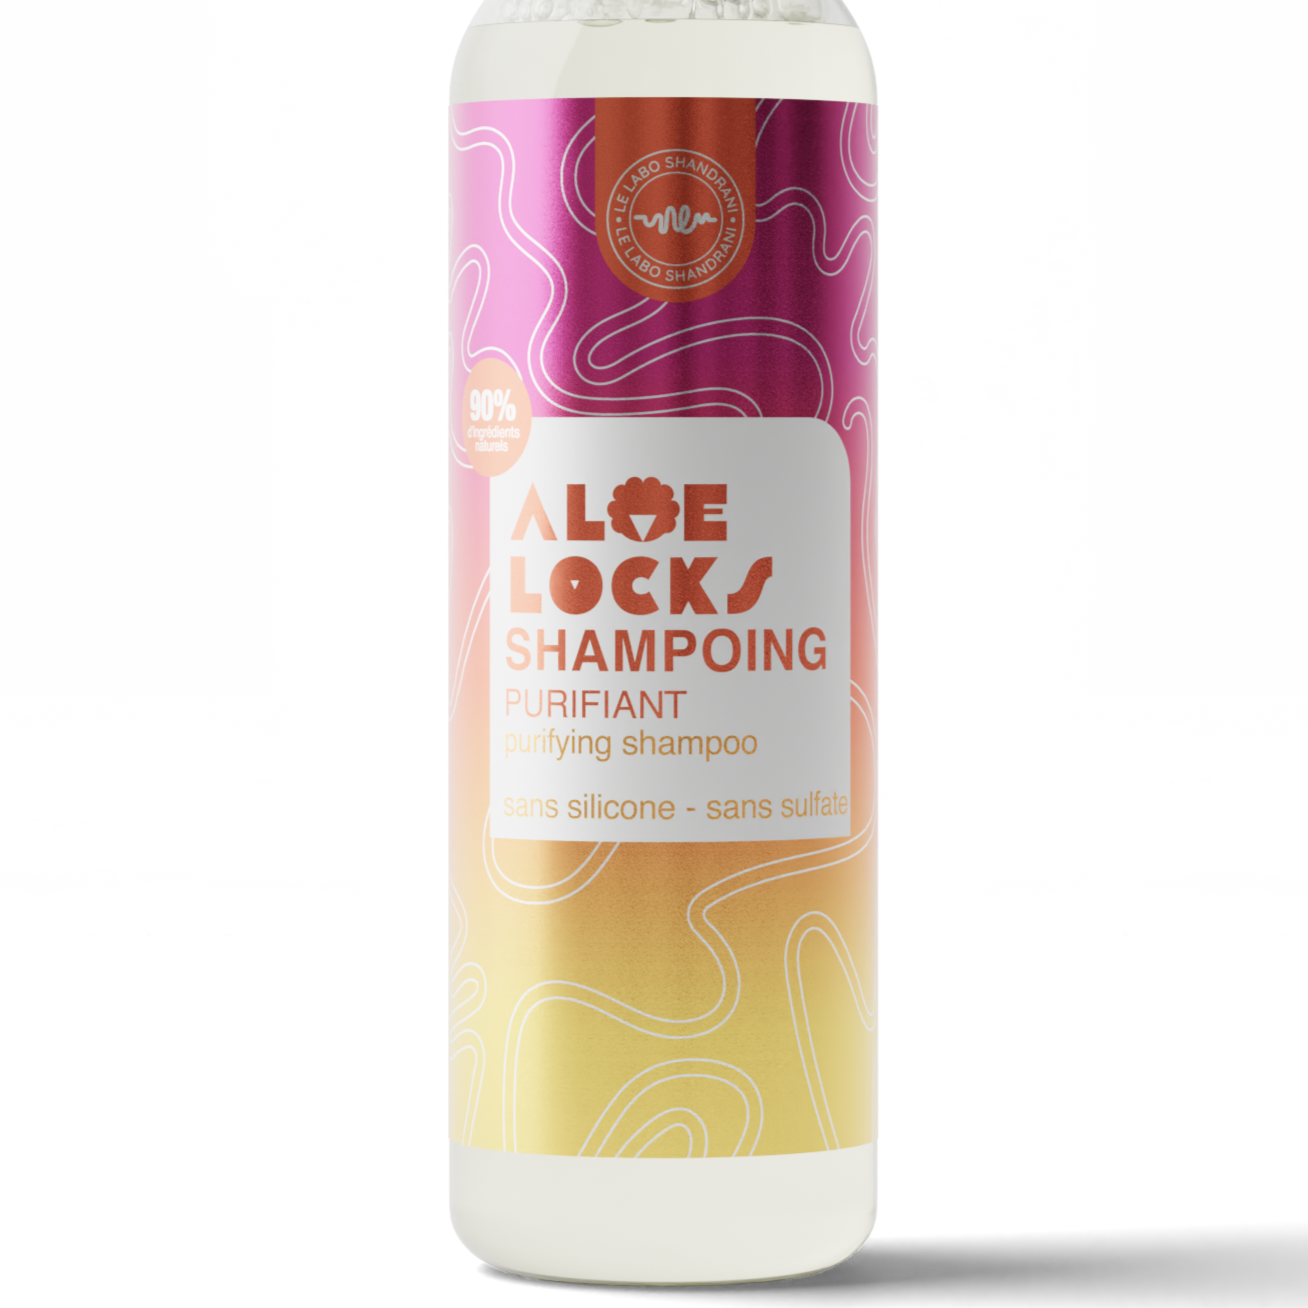 Aloé Locks - Shampoing Purifiant